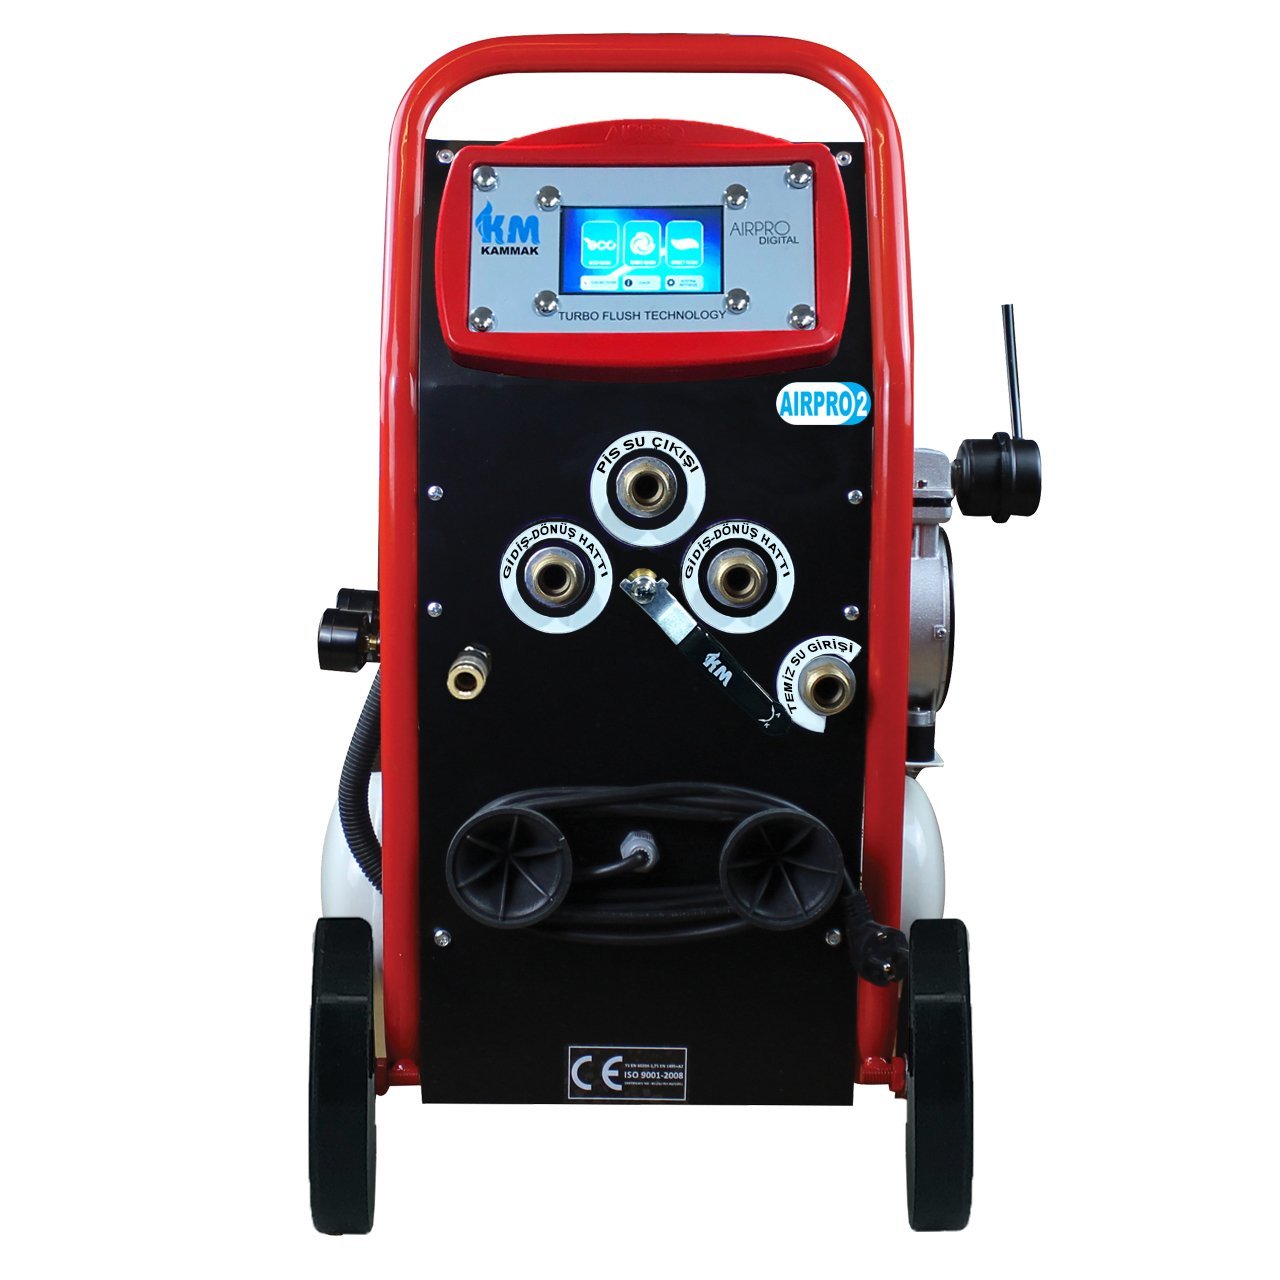 Digital Kompresörlü Çift Yönlü Petek Temizleme Makinası AirPro-2